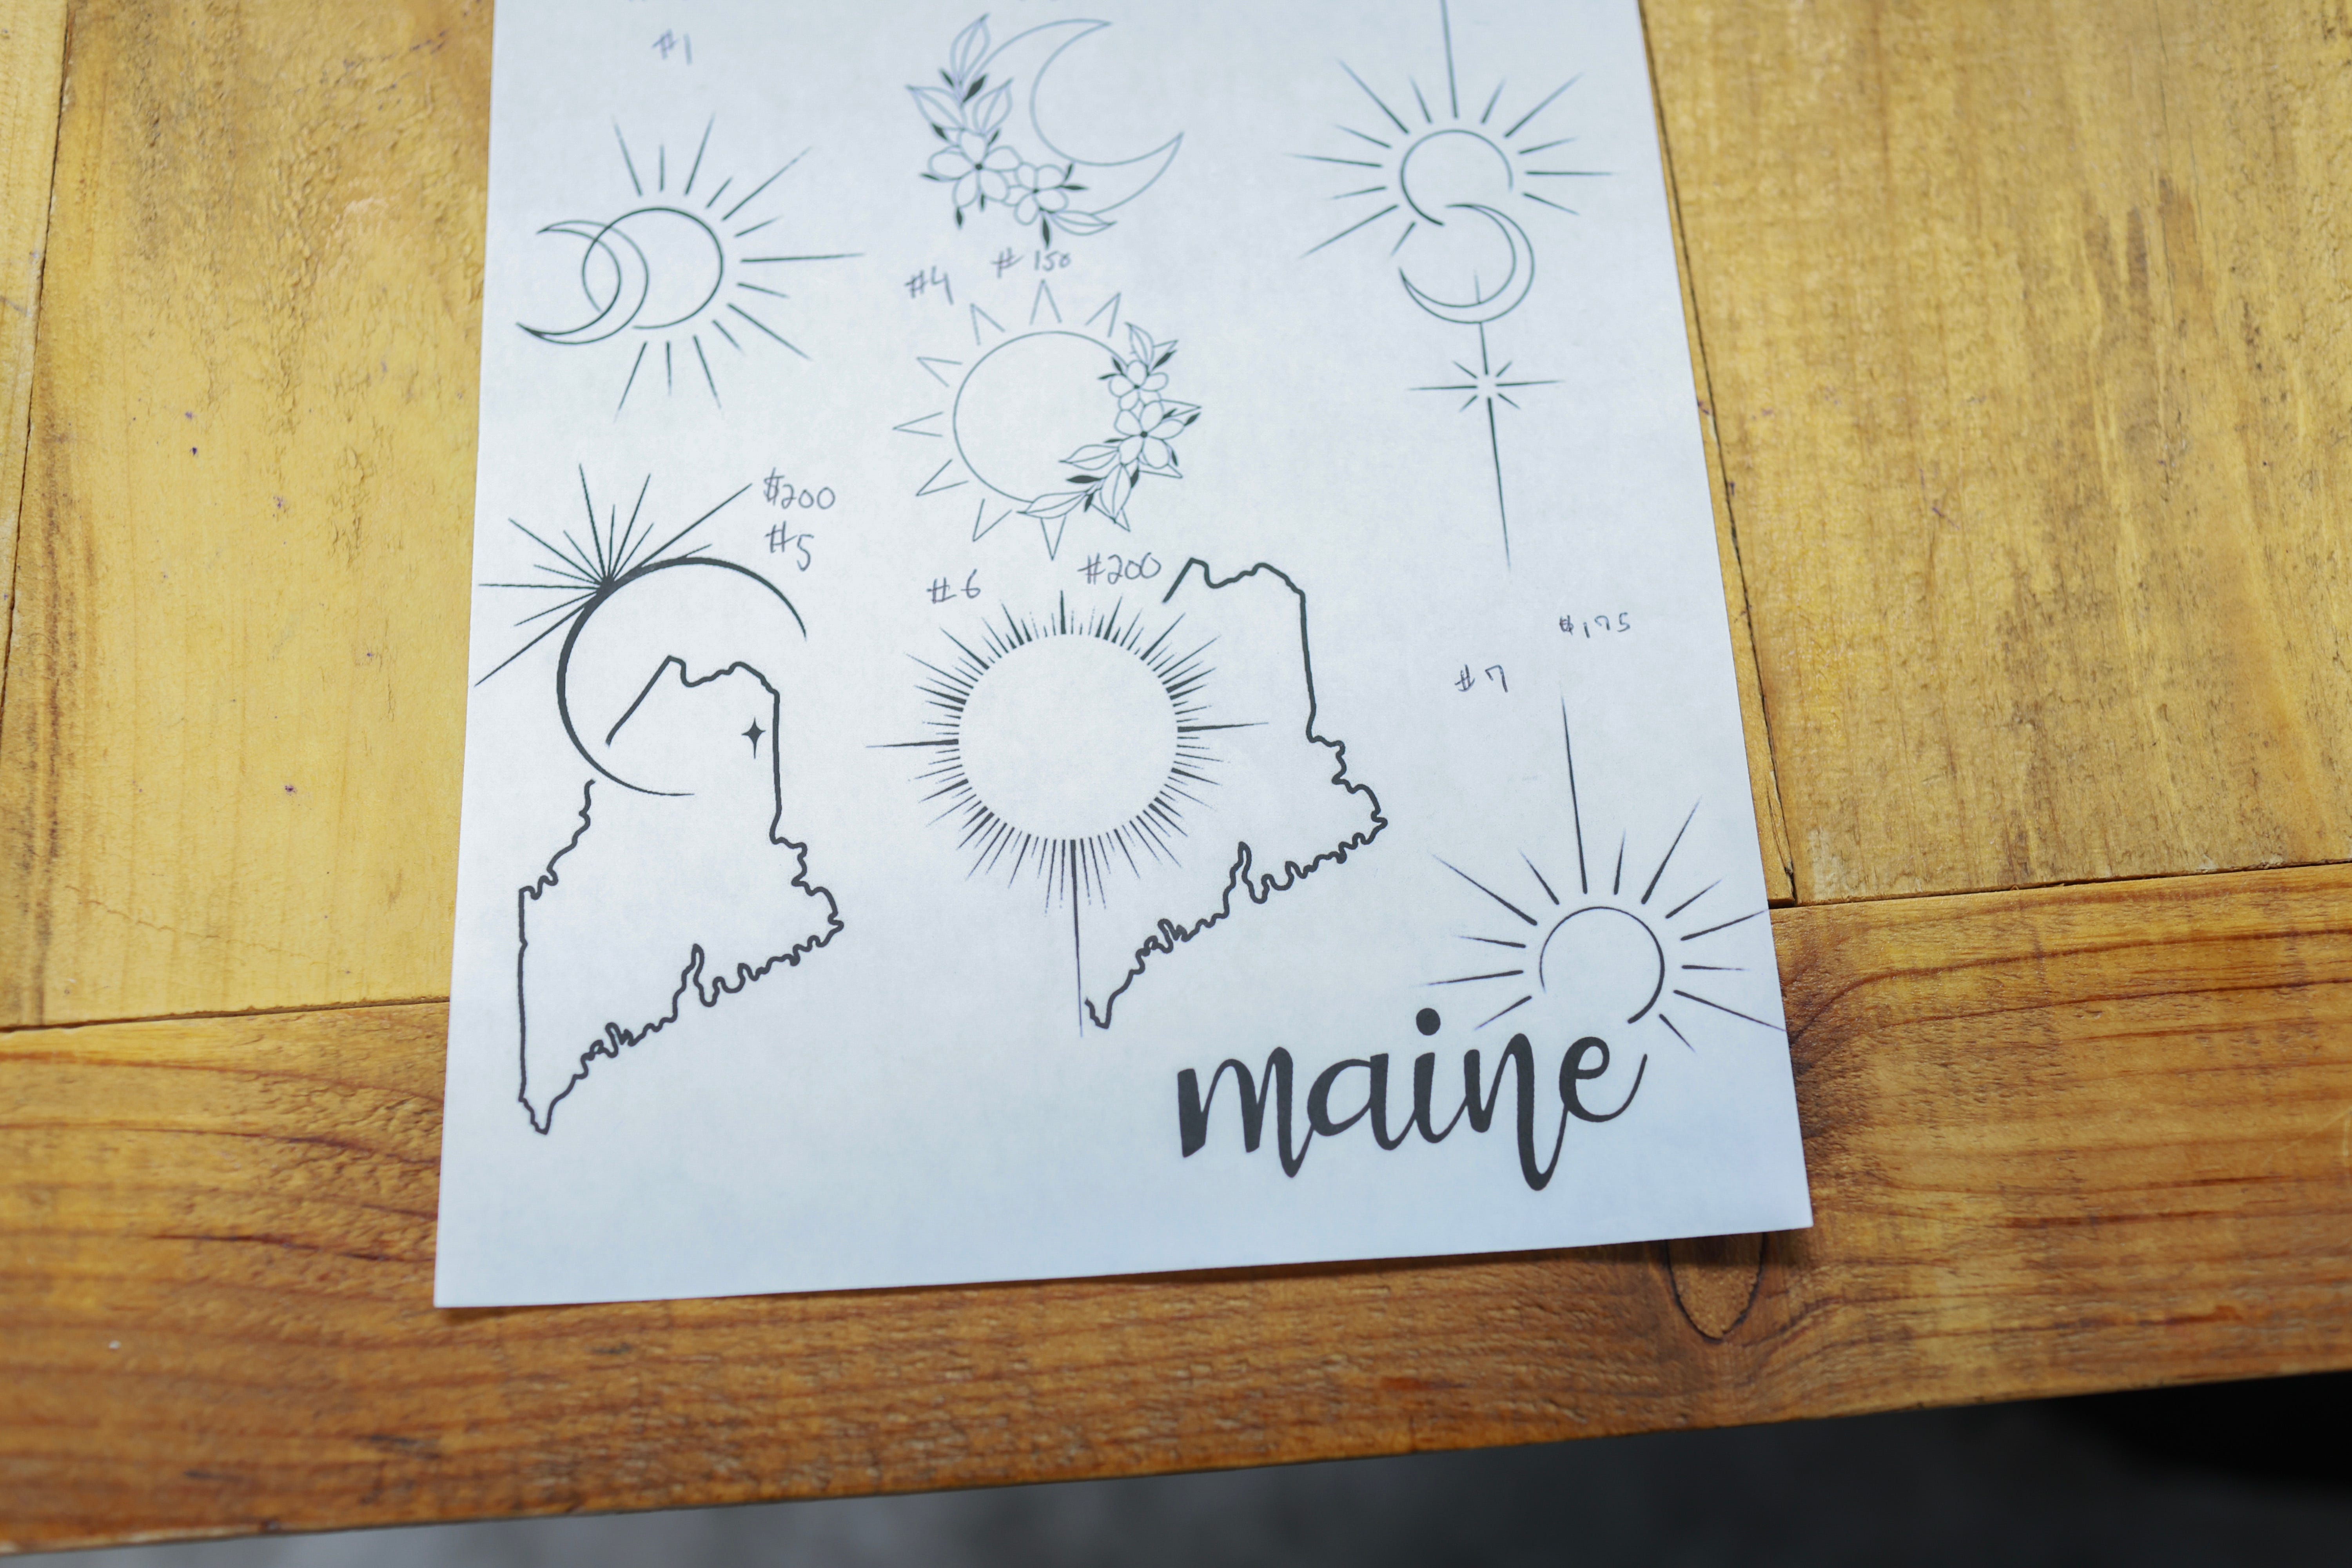 Eclipse-Tattoo-Designs werden am 7. April 2024 bei Crowe's Tattoos in Houlton, Maine, ausgestellt.  Dawn MacDonald, die Besitzerin des Ladens, sagte, sie habe einen stetigen Strom von Kunden, die sich Sonnenfinsternis-Tattoos wünschen.  Millionen von Menschen strömten in Gebiete in ganz Nordamerika, die sich auf dem „Weg der Totalität“ befinden, um eine totale Sonnenfinsternis zu erleben.